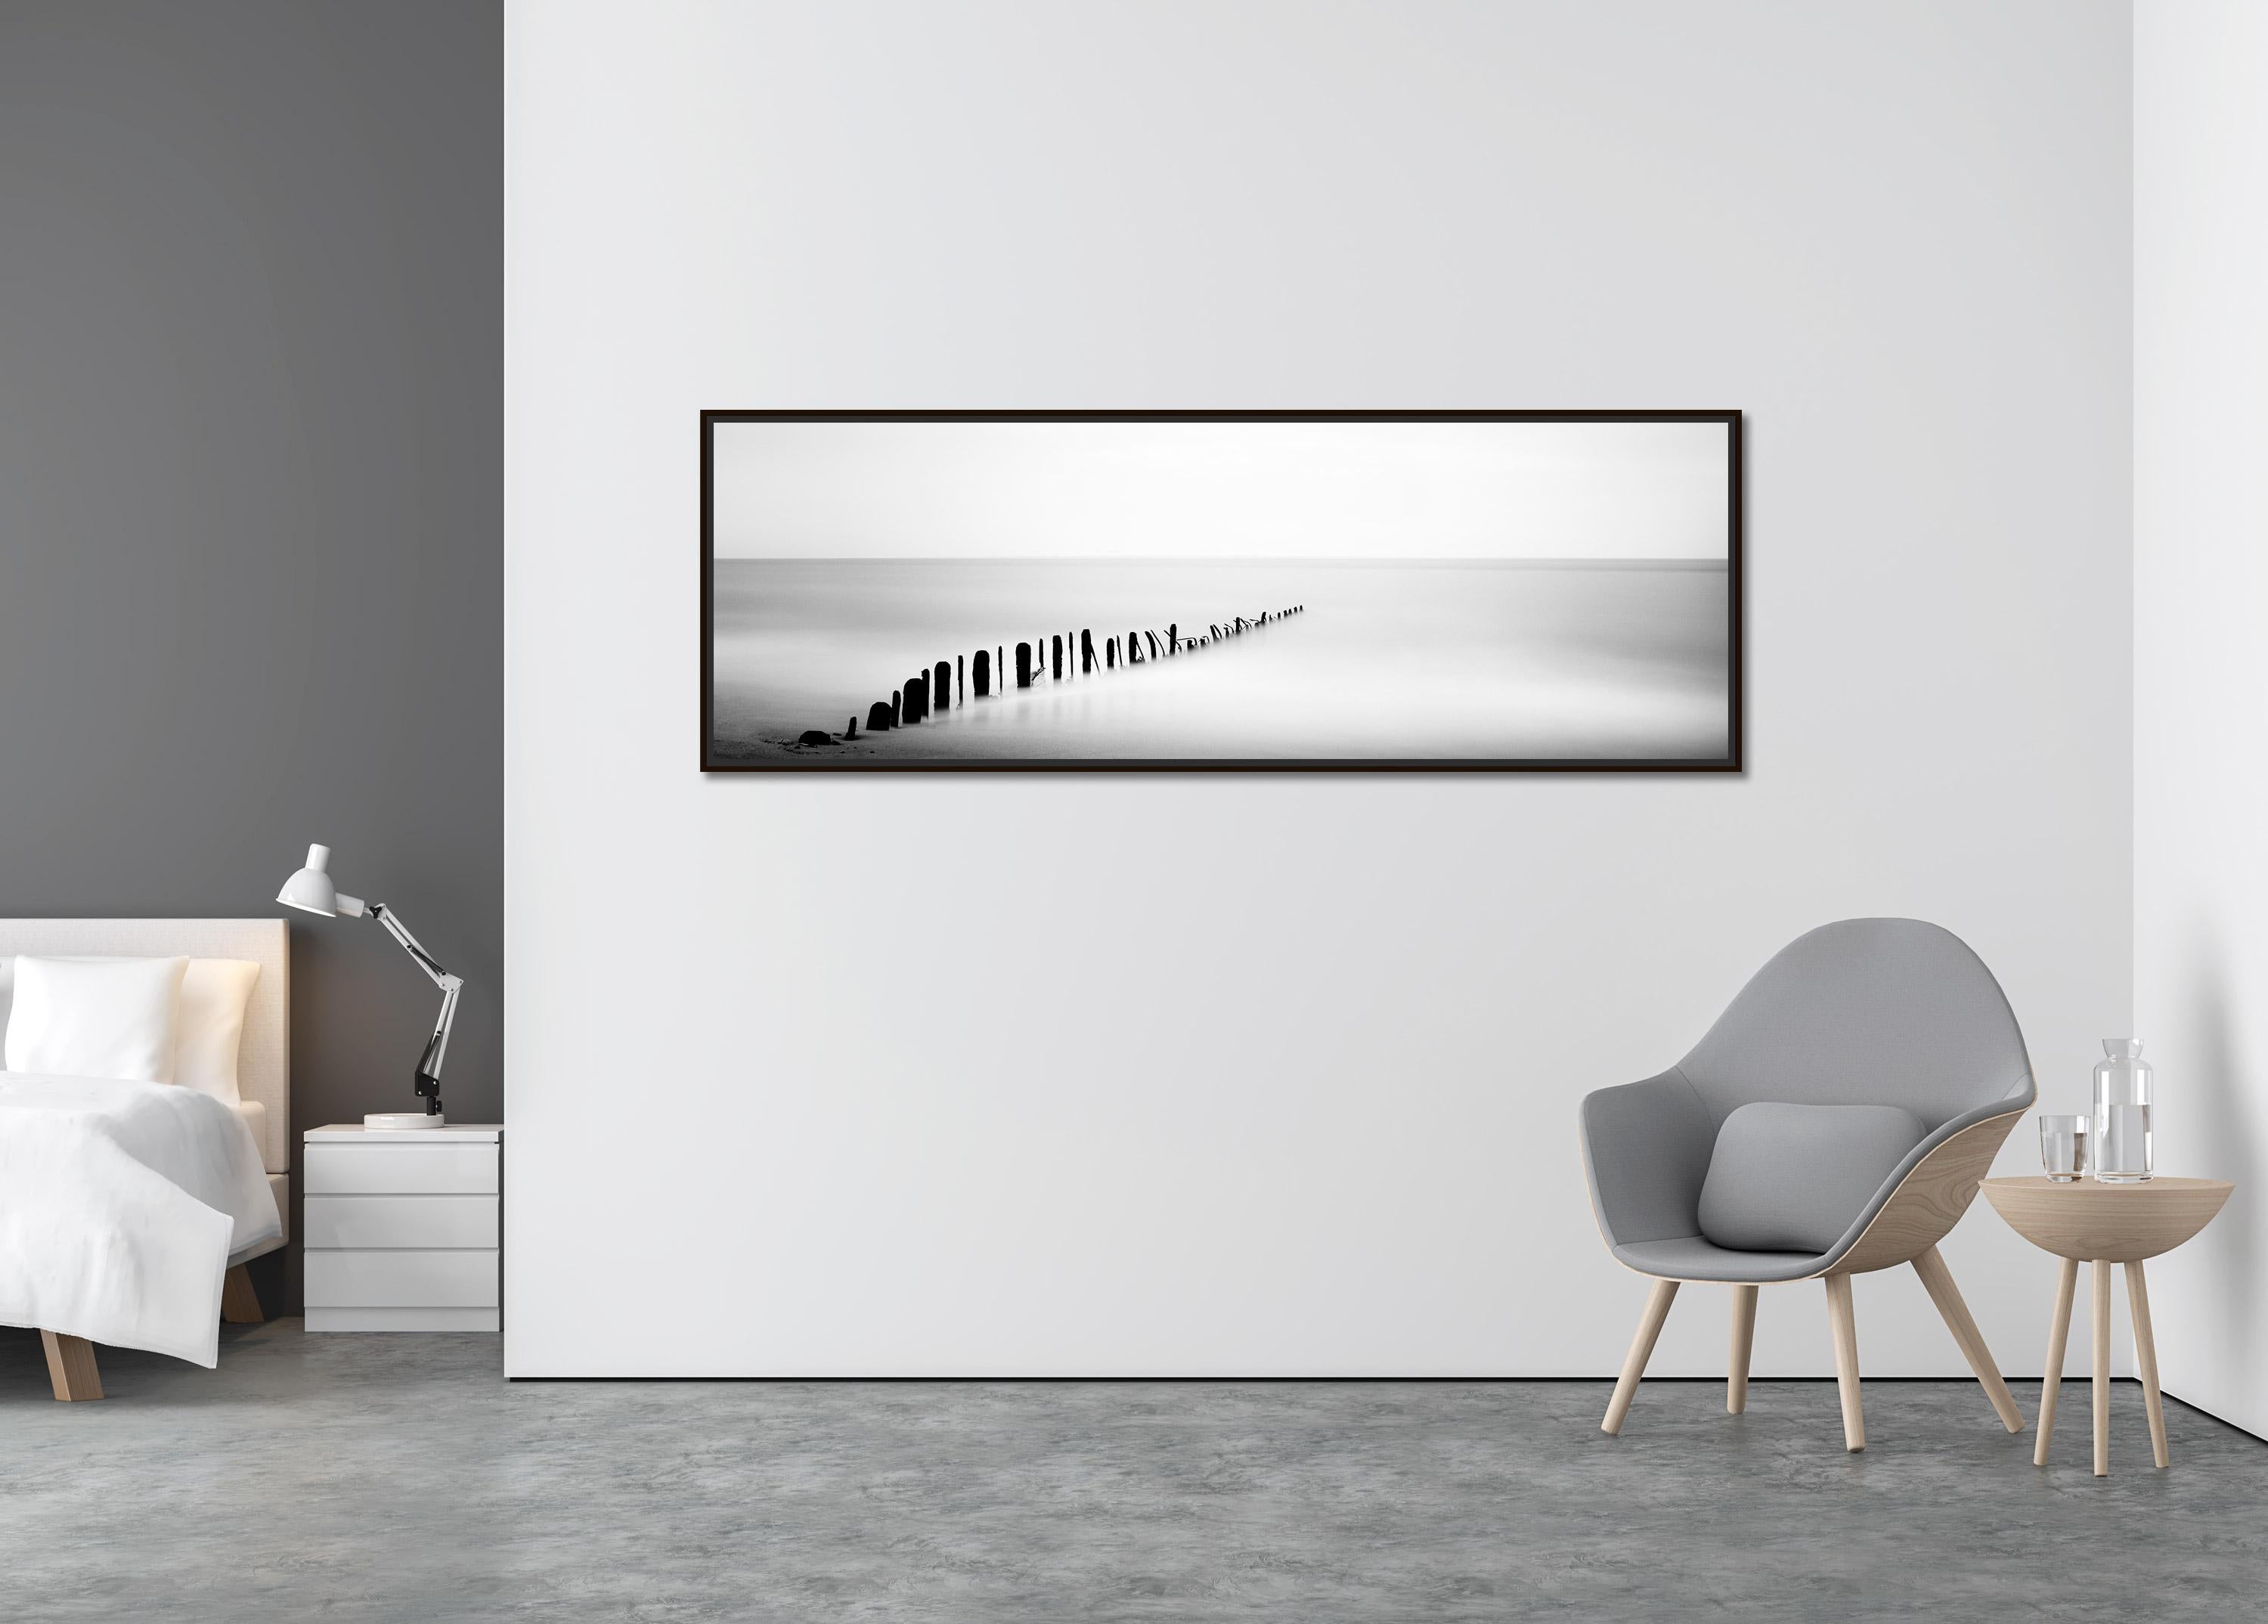  Panorama aus Eisen-Tees, Wellenbrecher, Sylt, Deutschland, Schwarz-Weiß-Kunstfotografie (Zeitgenössisch), Photograph, von Gerald Berghammer